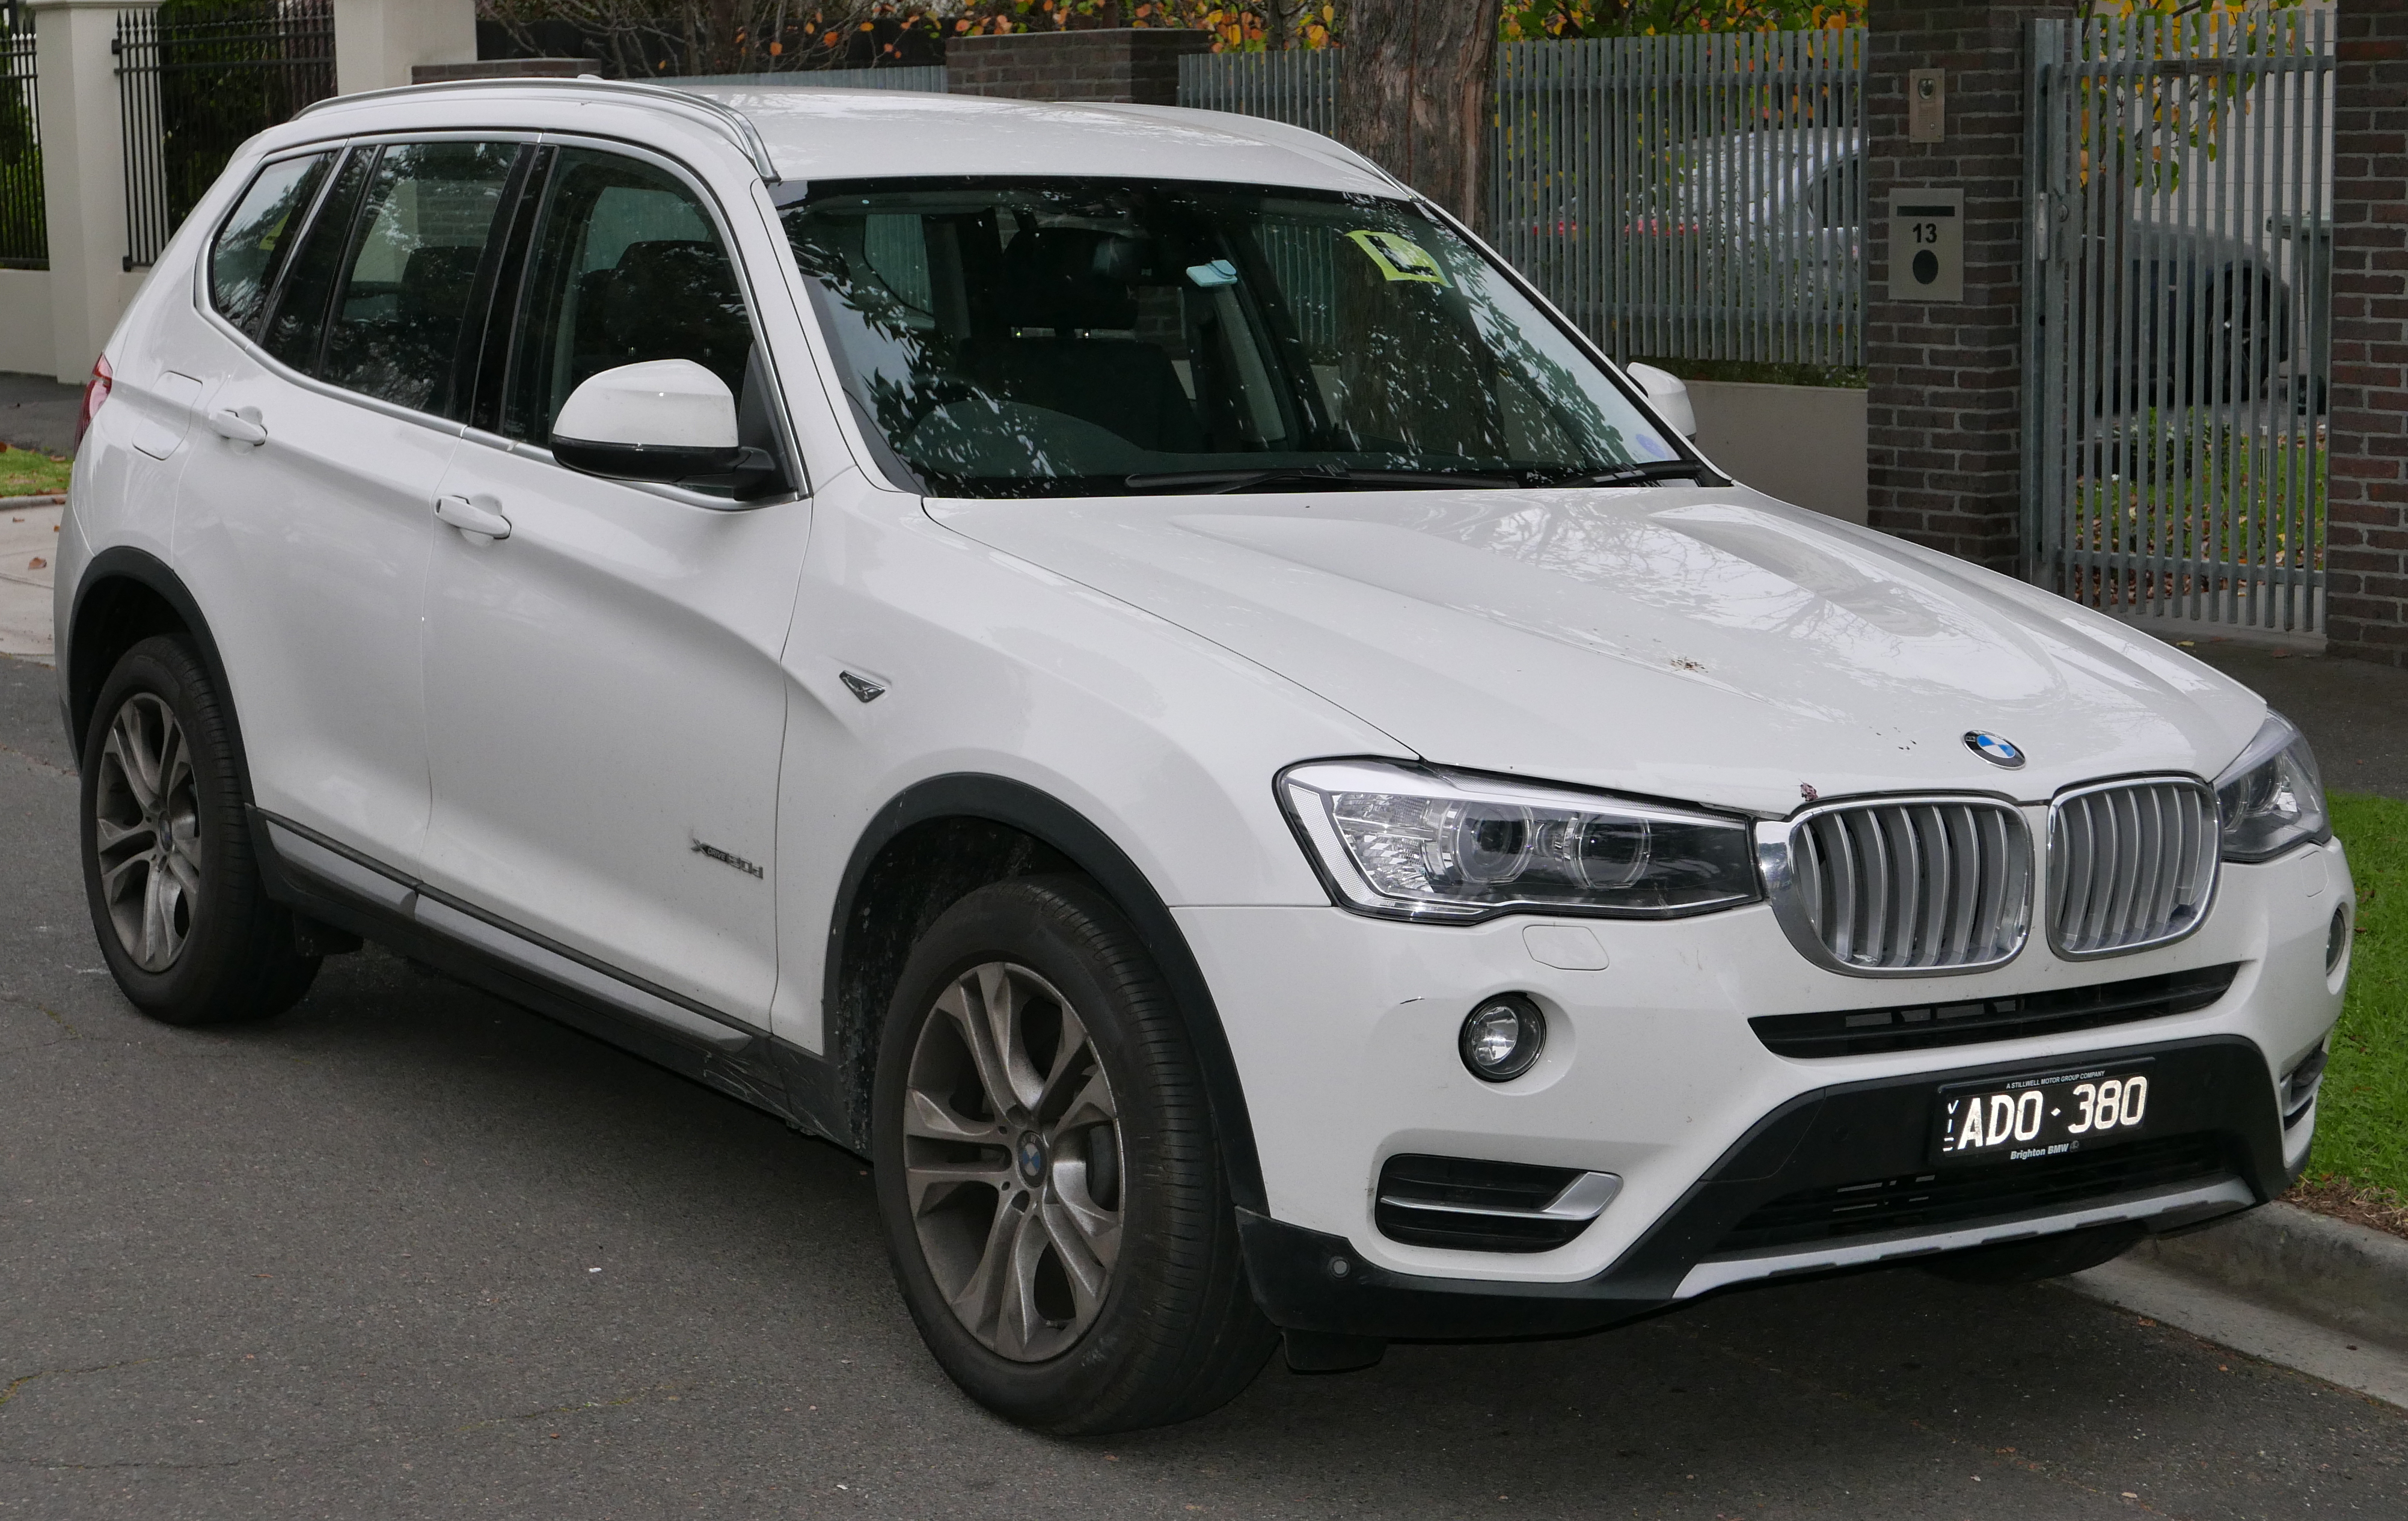 Datei:2015 BMW X3 (F25 LCI) xDrive20d wagon (2015-06-27).jpg